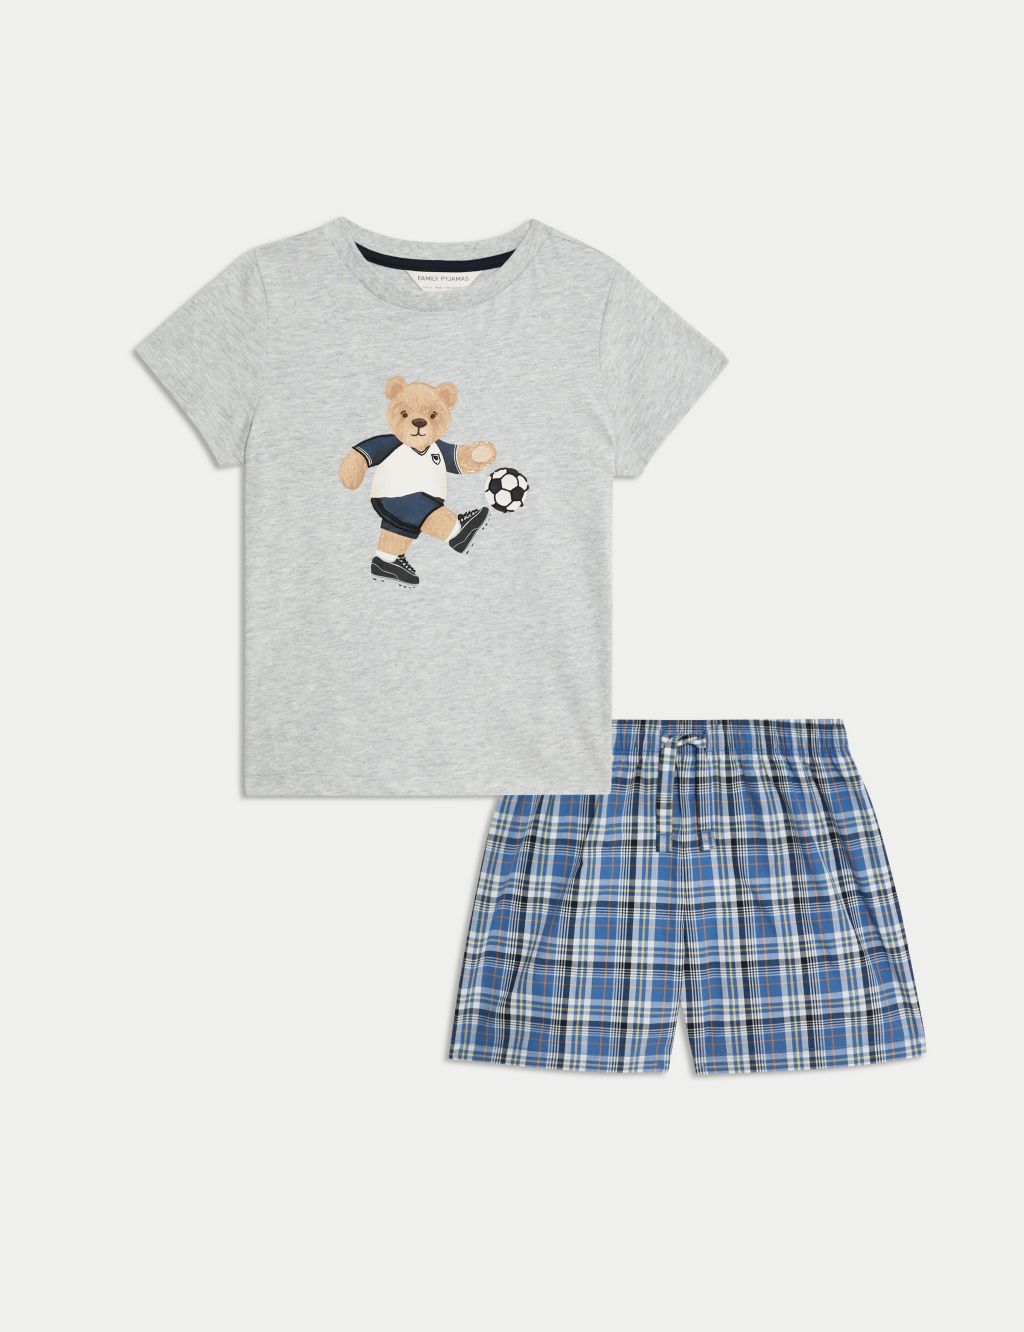 Pure Cotton Spencer Bear™ Pyjamas (1-16 Yrs)